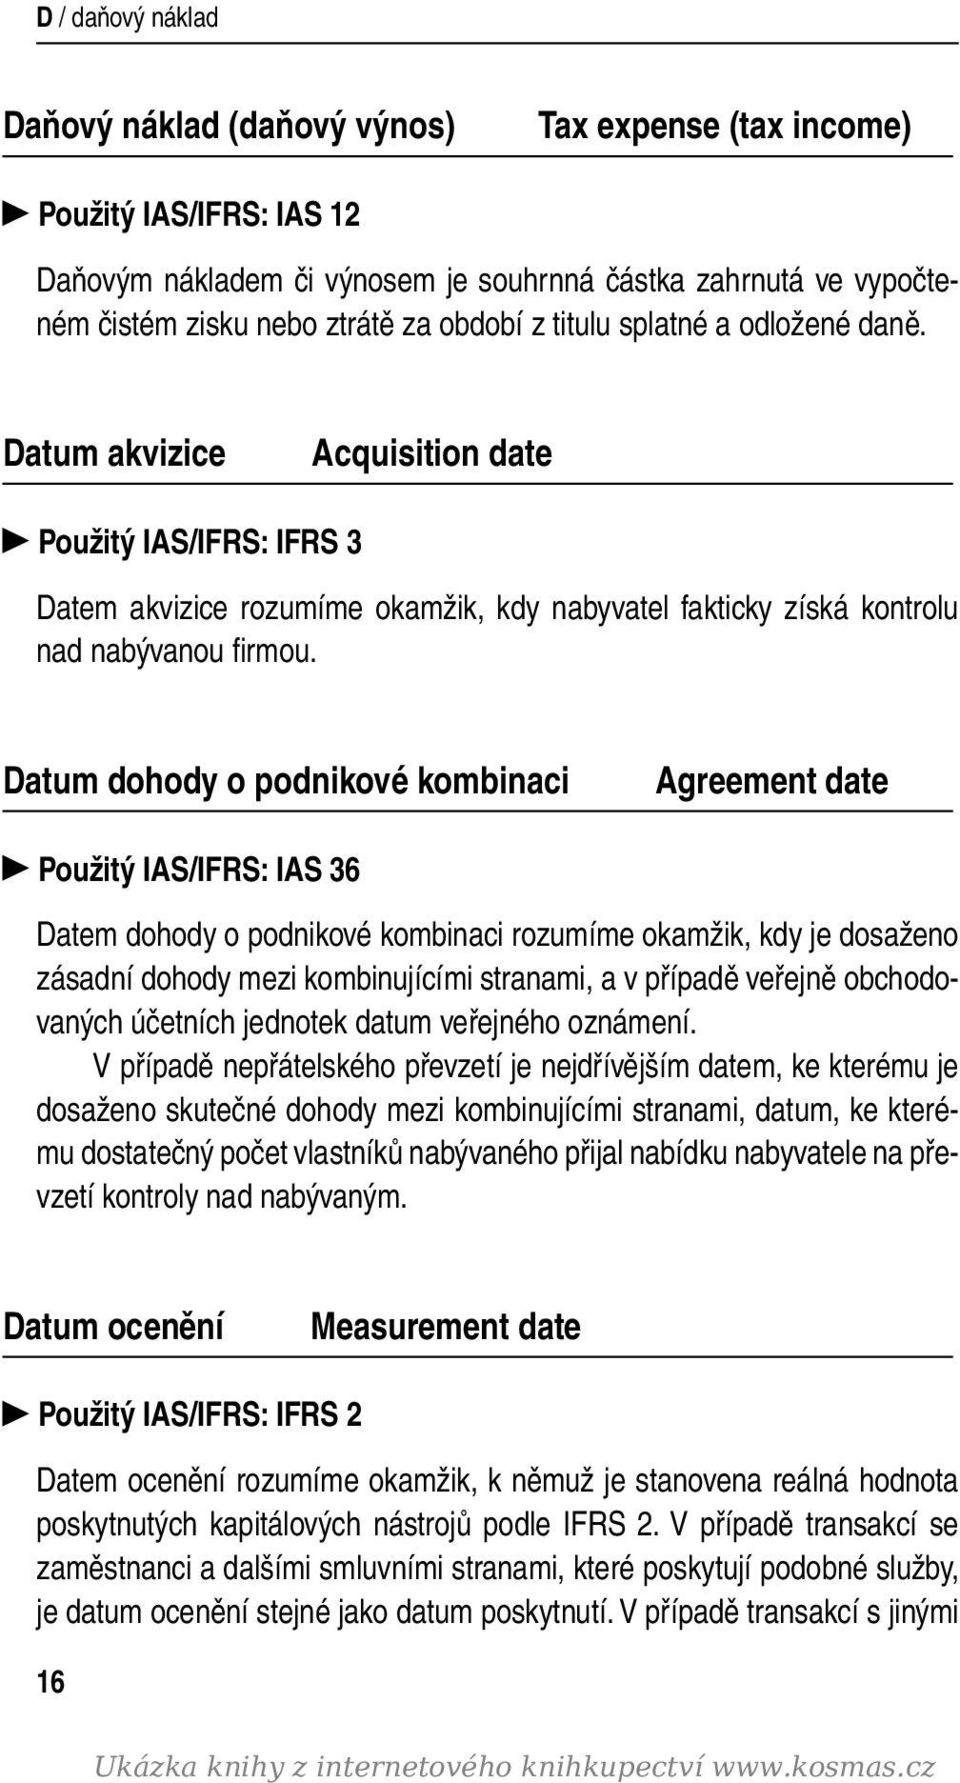 Datum dohody o podnikové kombinaci Agreement date Použitý IAS/IFRS: IAS 36 Datem dohody o podnikové kombinaci rozumíme okamžik, kdy je dosaženo zásadní dohody mezi kombinujícími stranami, a v případě